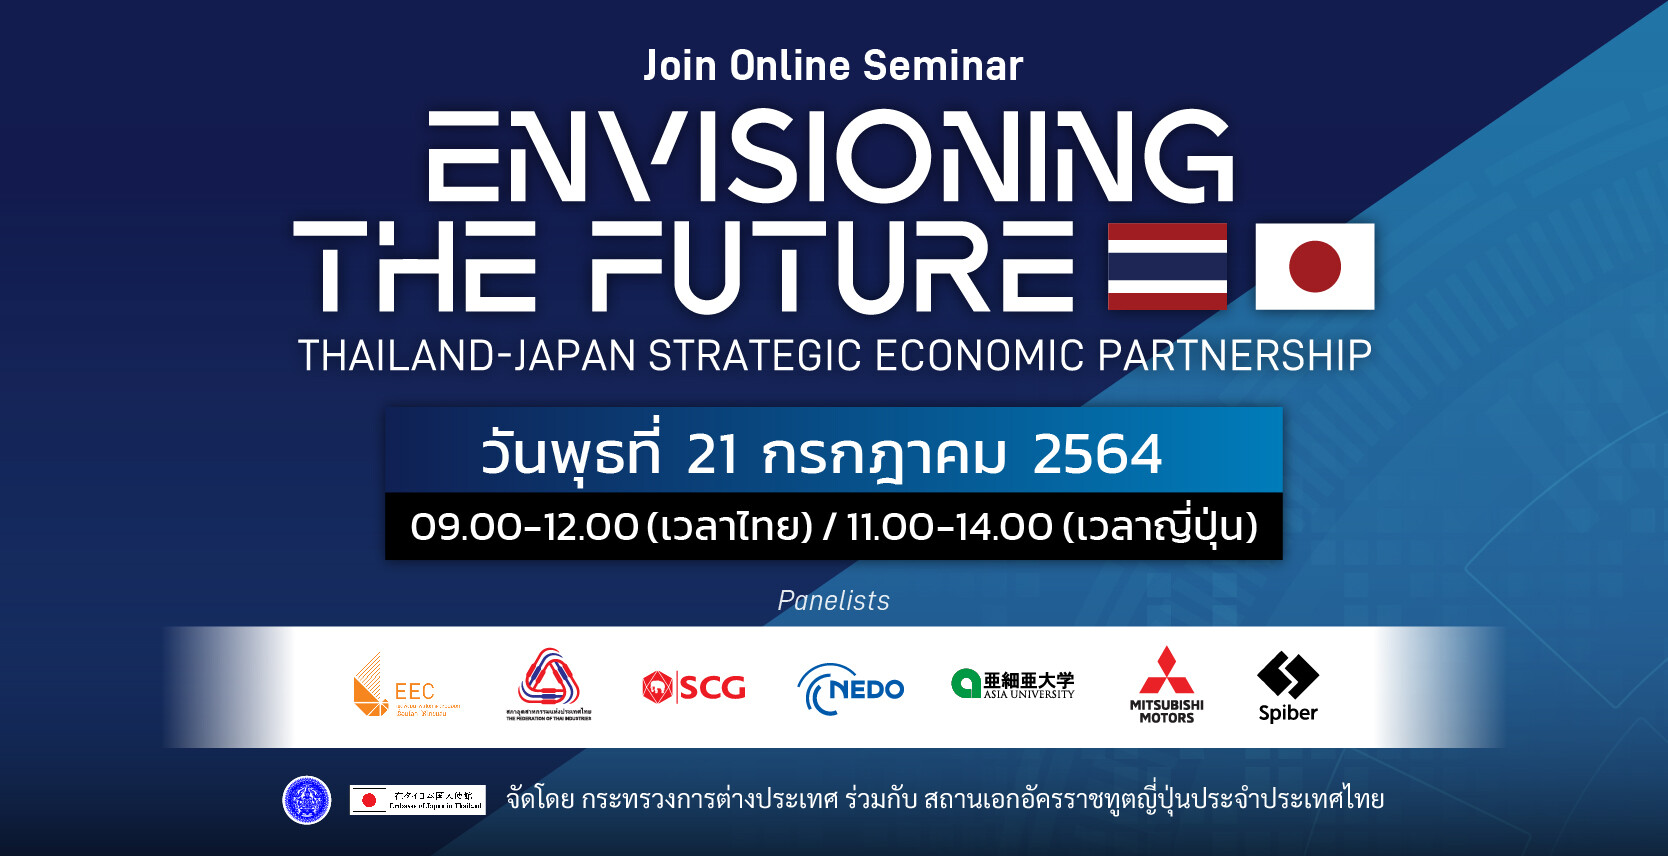 เชิญร่วมรับฟังสัมมนาออนไลน์เชิงวิชาการ ในหัวข้อ "Envisioning the Future : Thailand-Japan Strategic Economic Partnership"